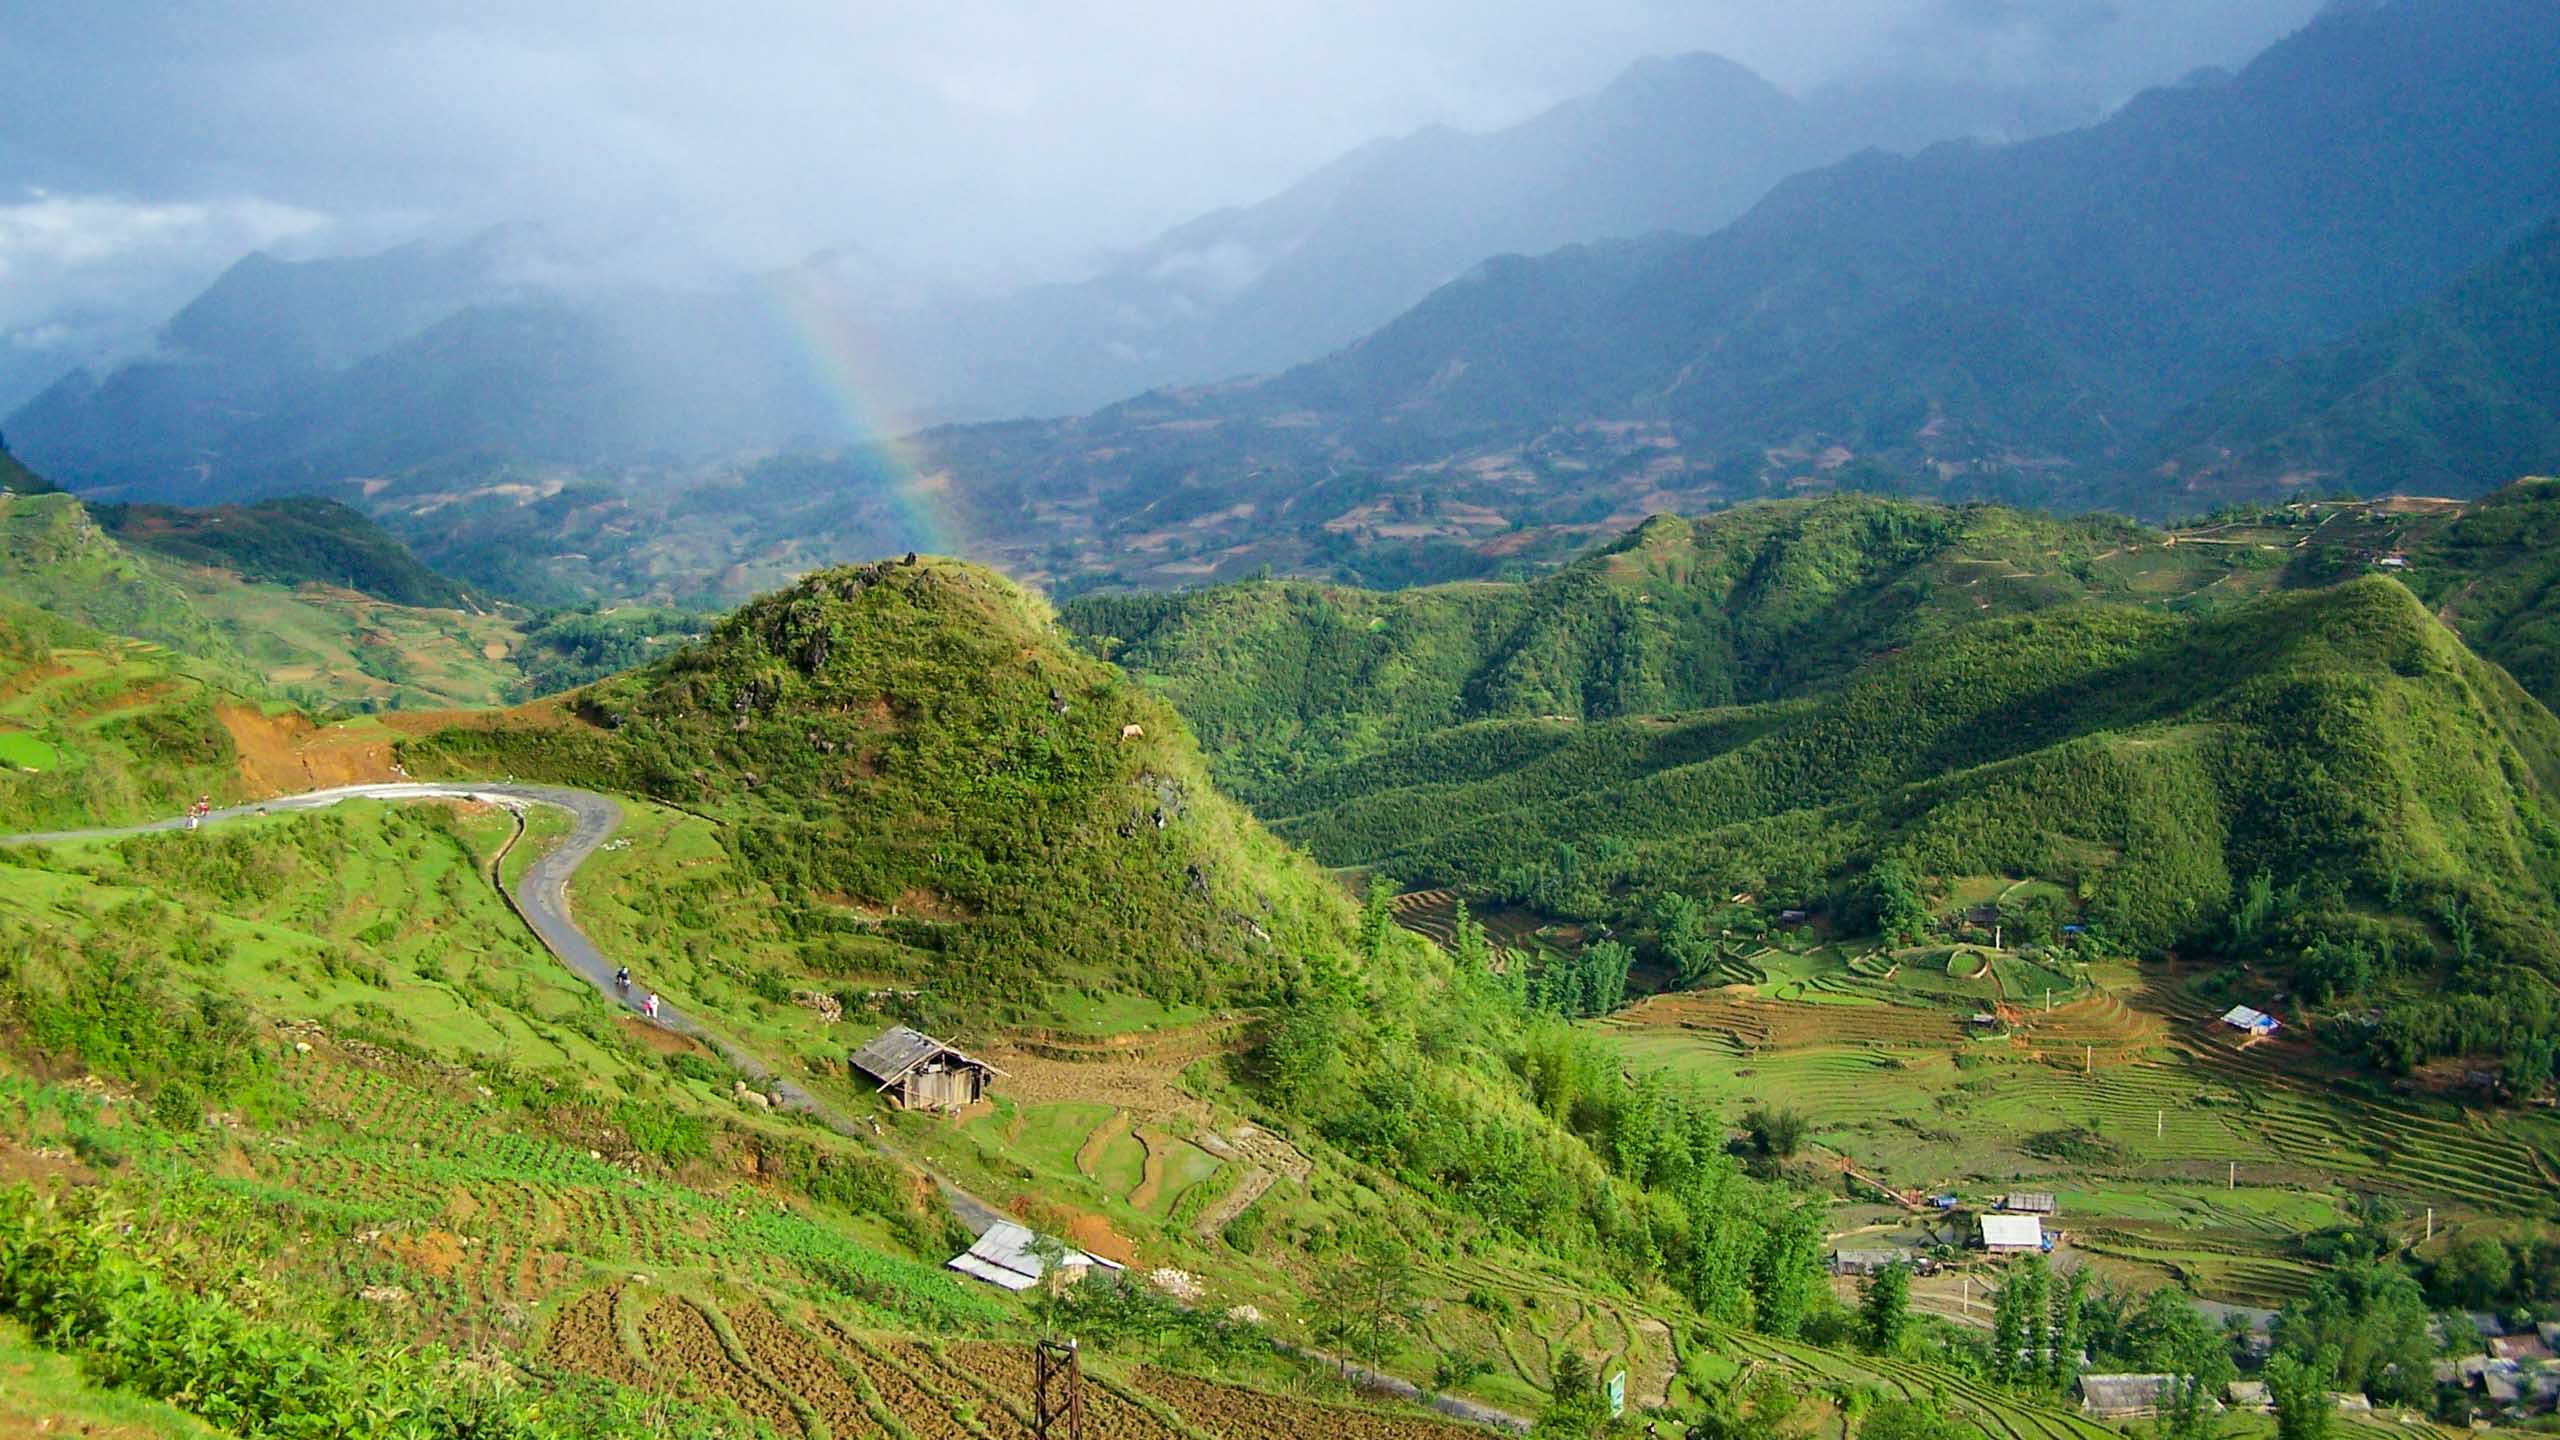 Rainbow over green Vietnam valley